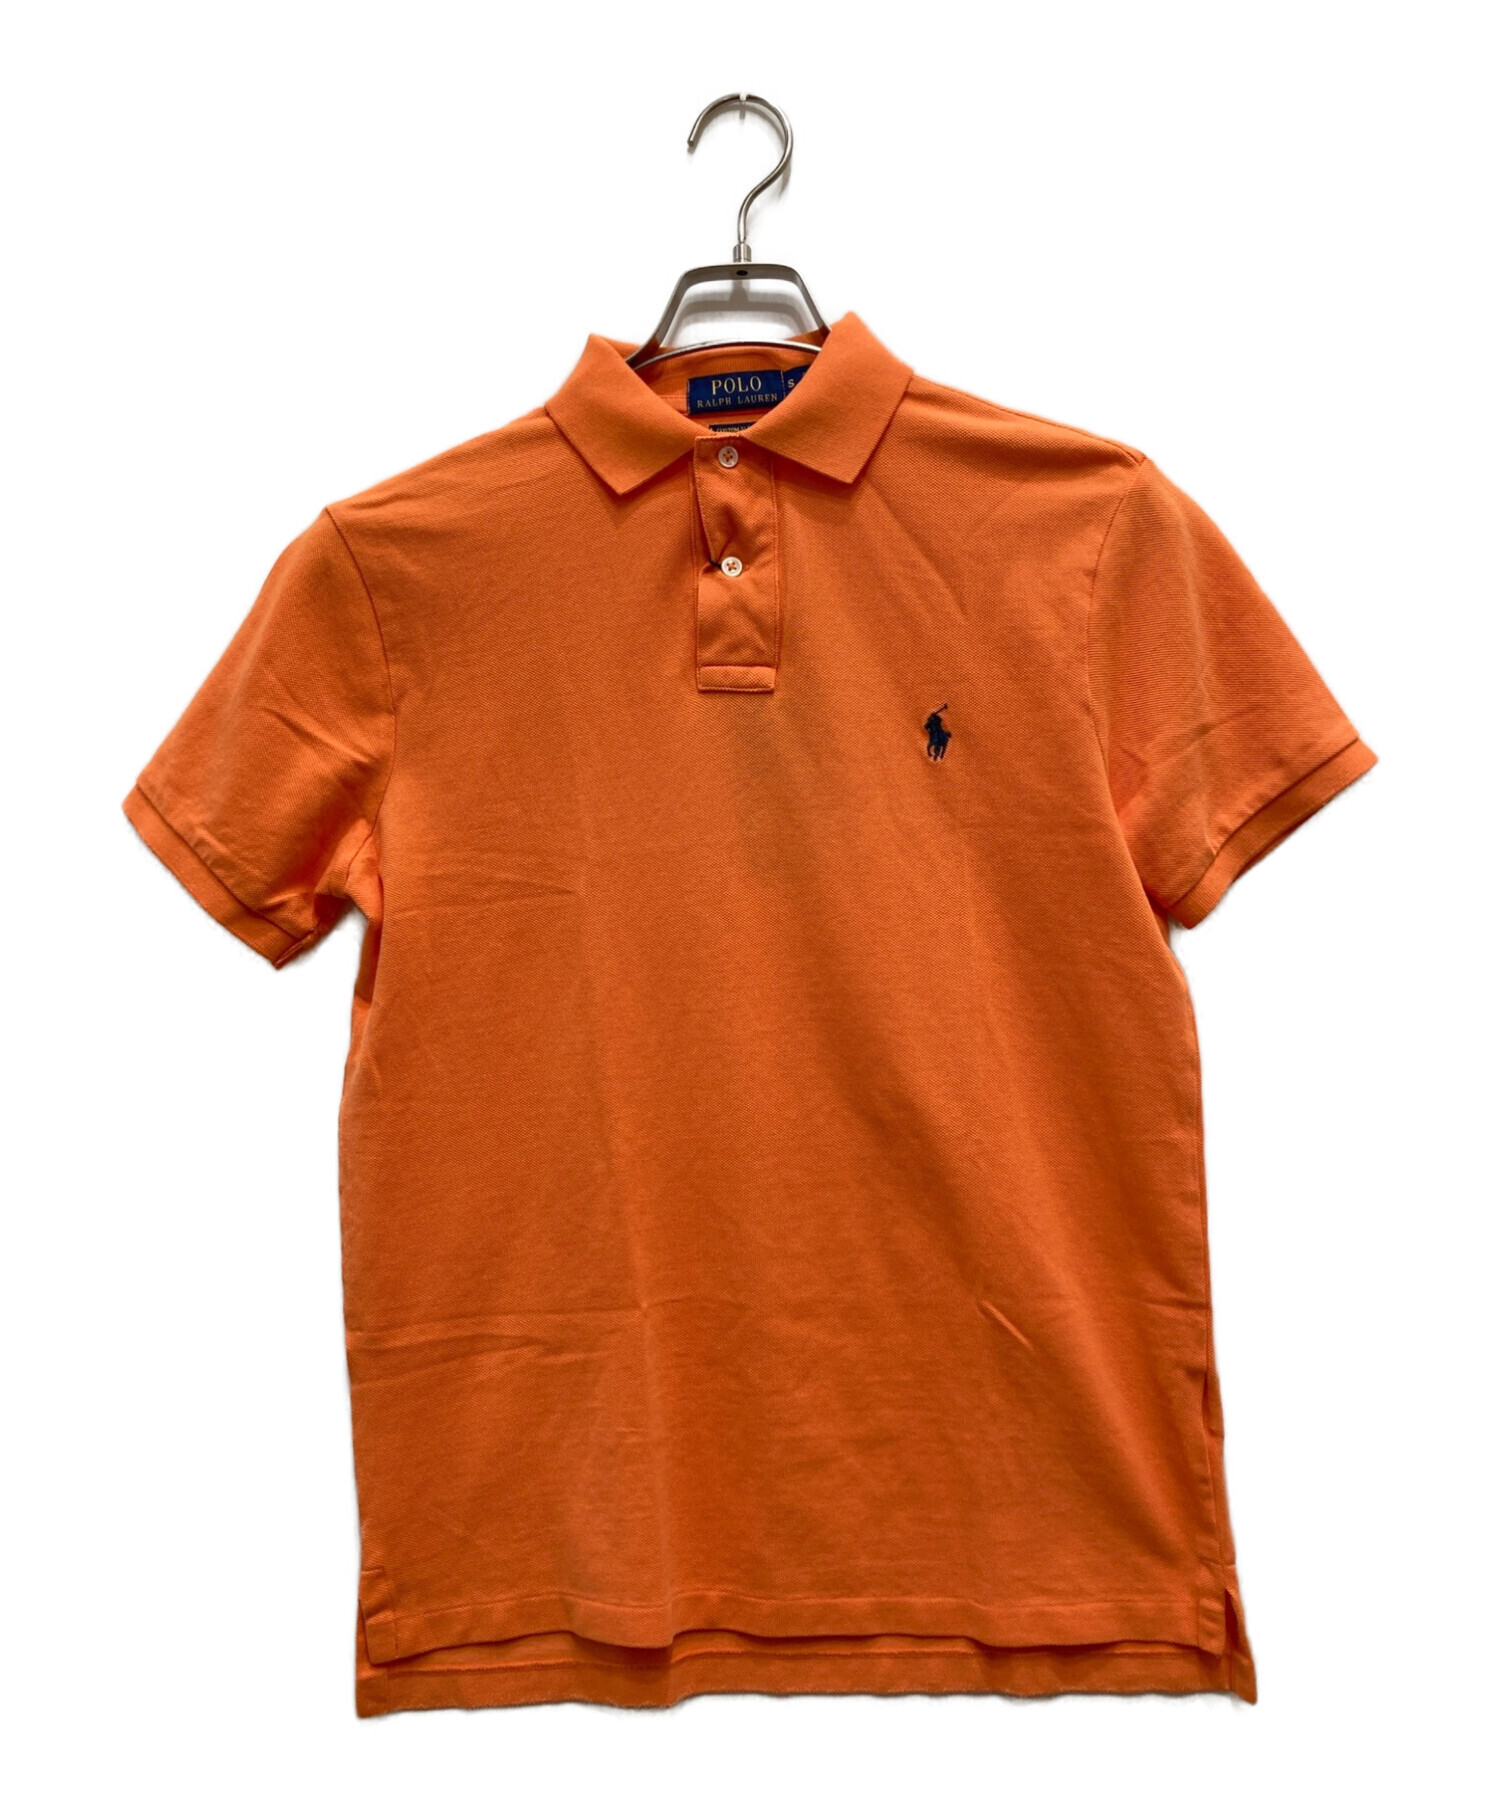 POLO RALPH LAUREN (ポロ・ラルフローレン) ポロシャツ オレンジ サイズ:Ｓ